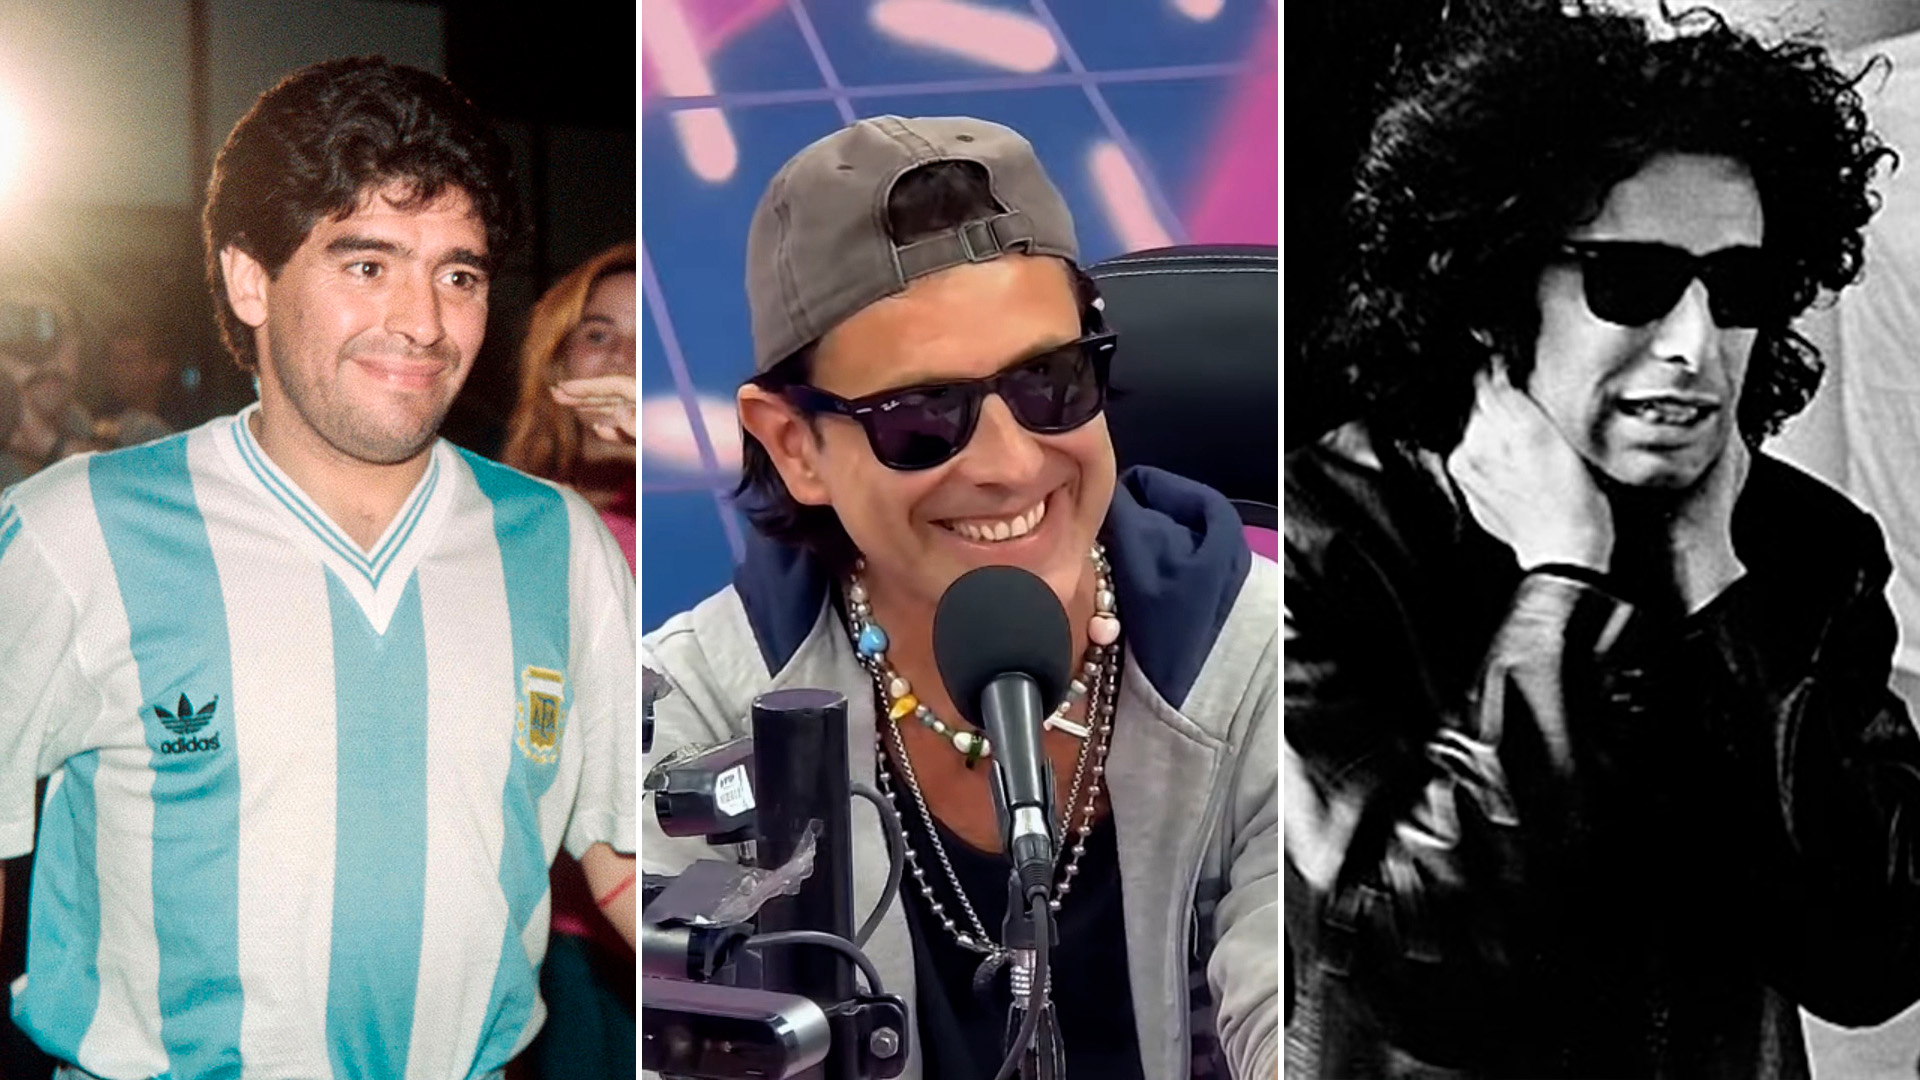 Coti Sorokin contó como fue grabar con Andrés Calamaro y Diego Maradona: “No es verdad que nos hizo desnudar”